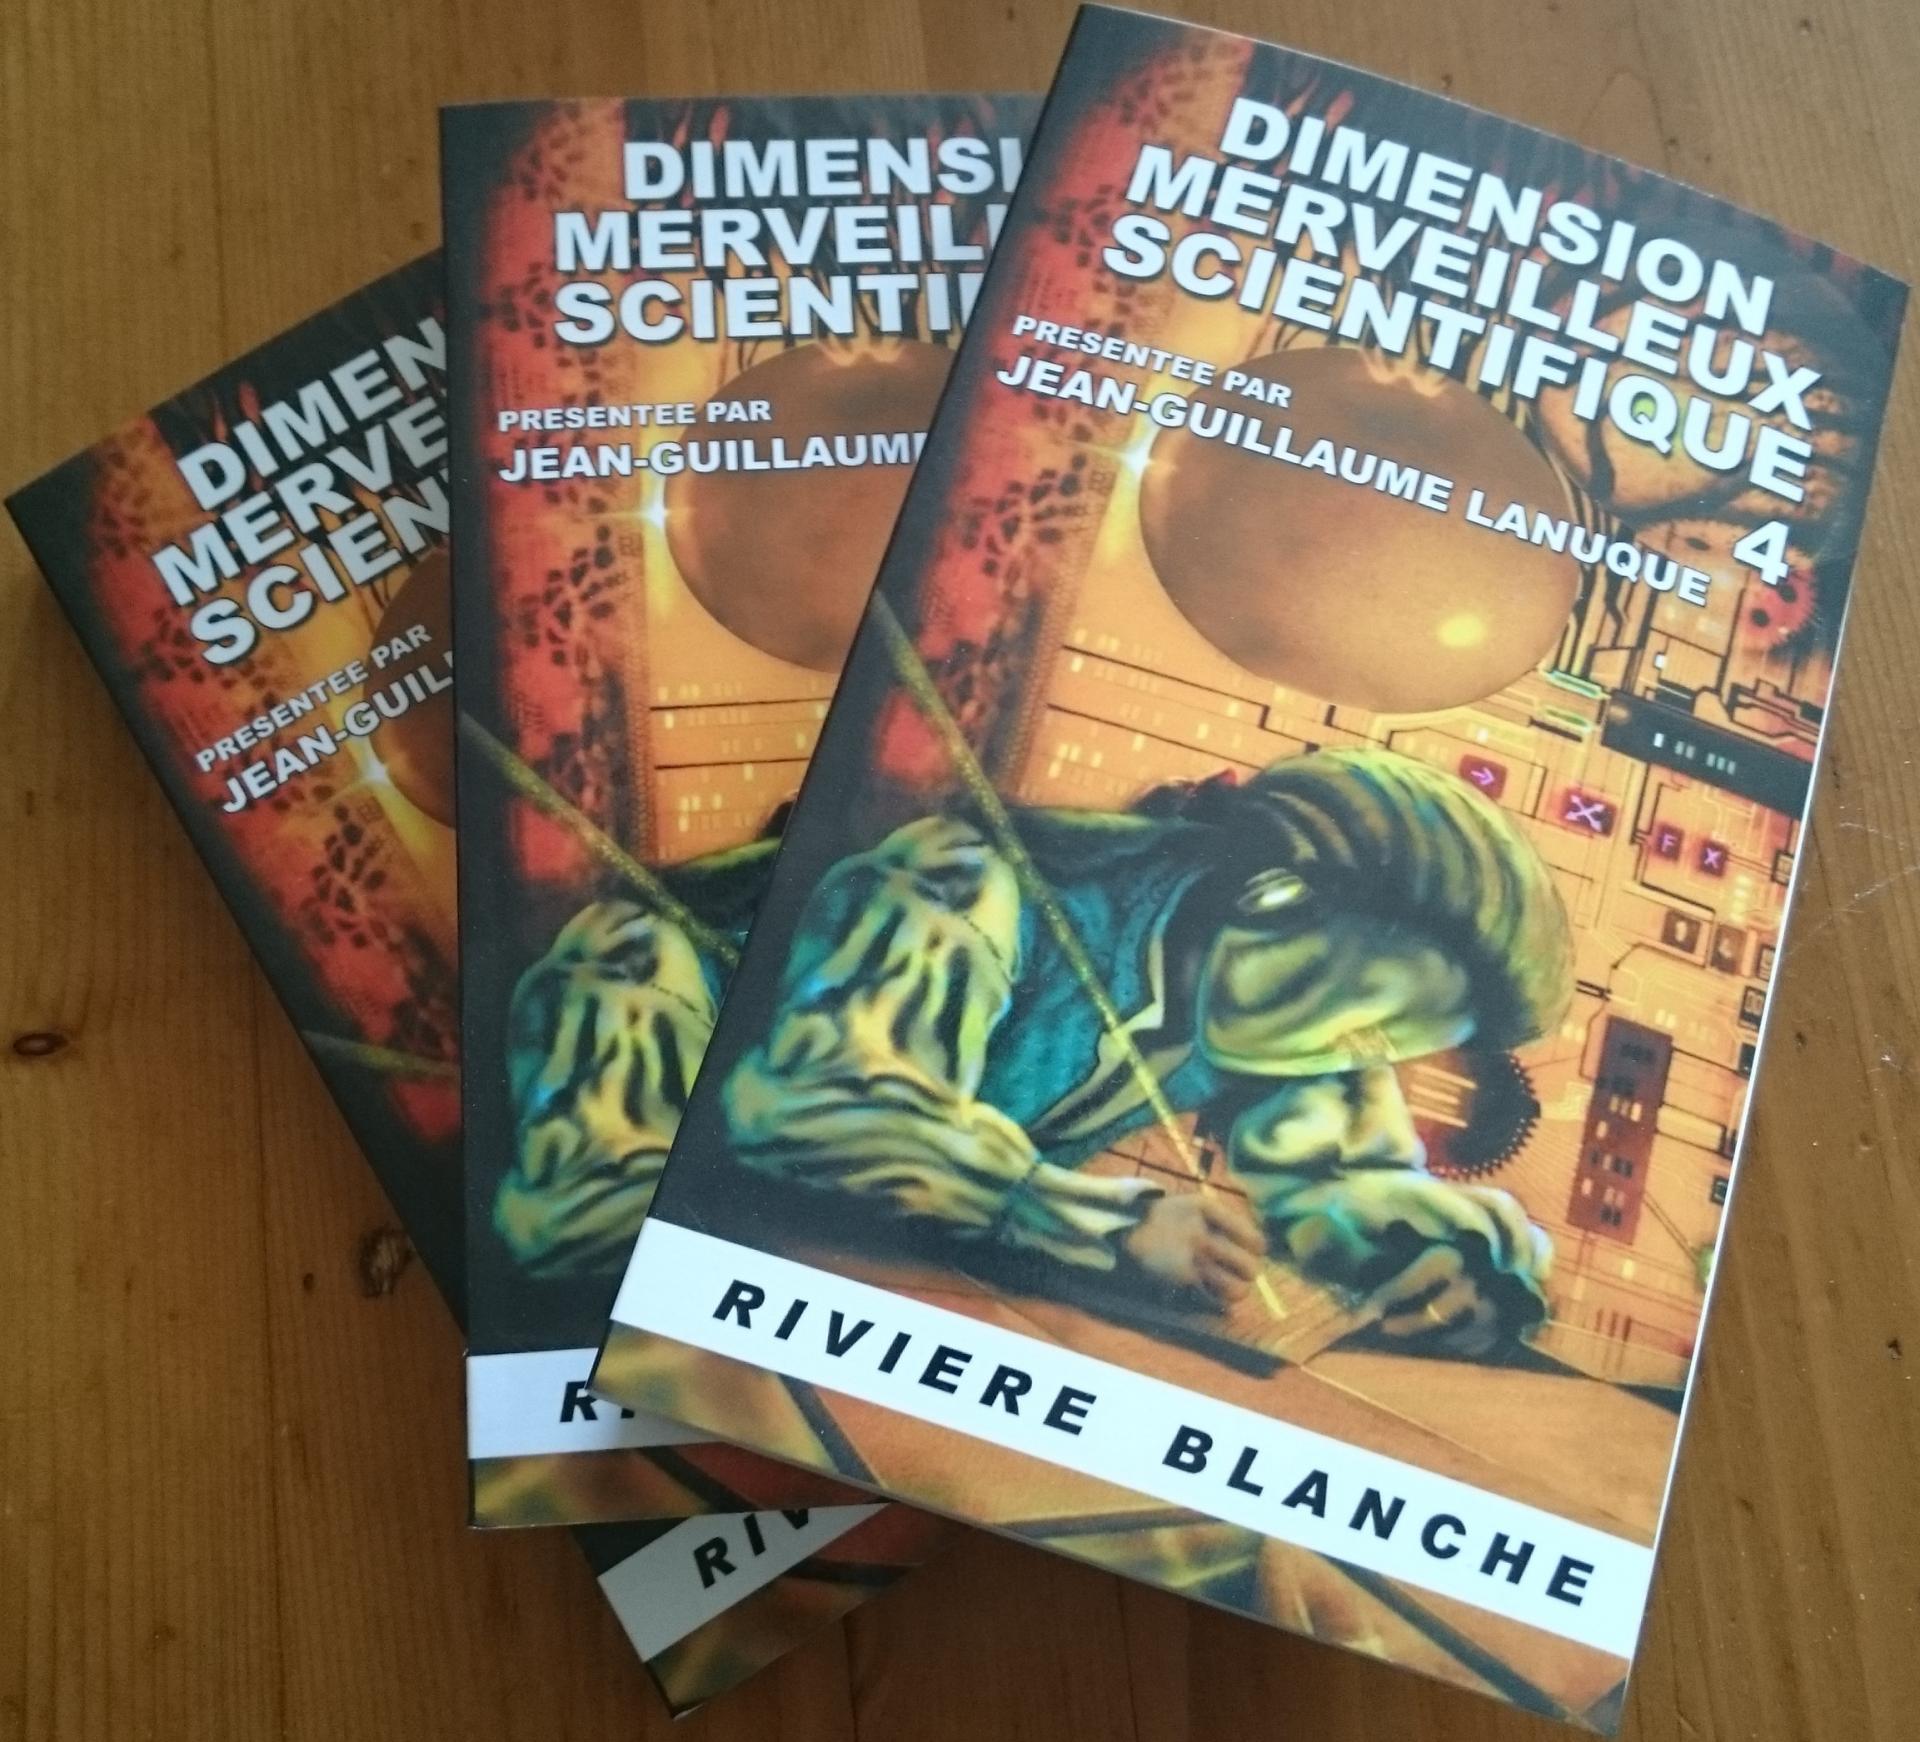 Les livres Dimension merveilleux scientifique 4